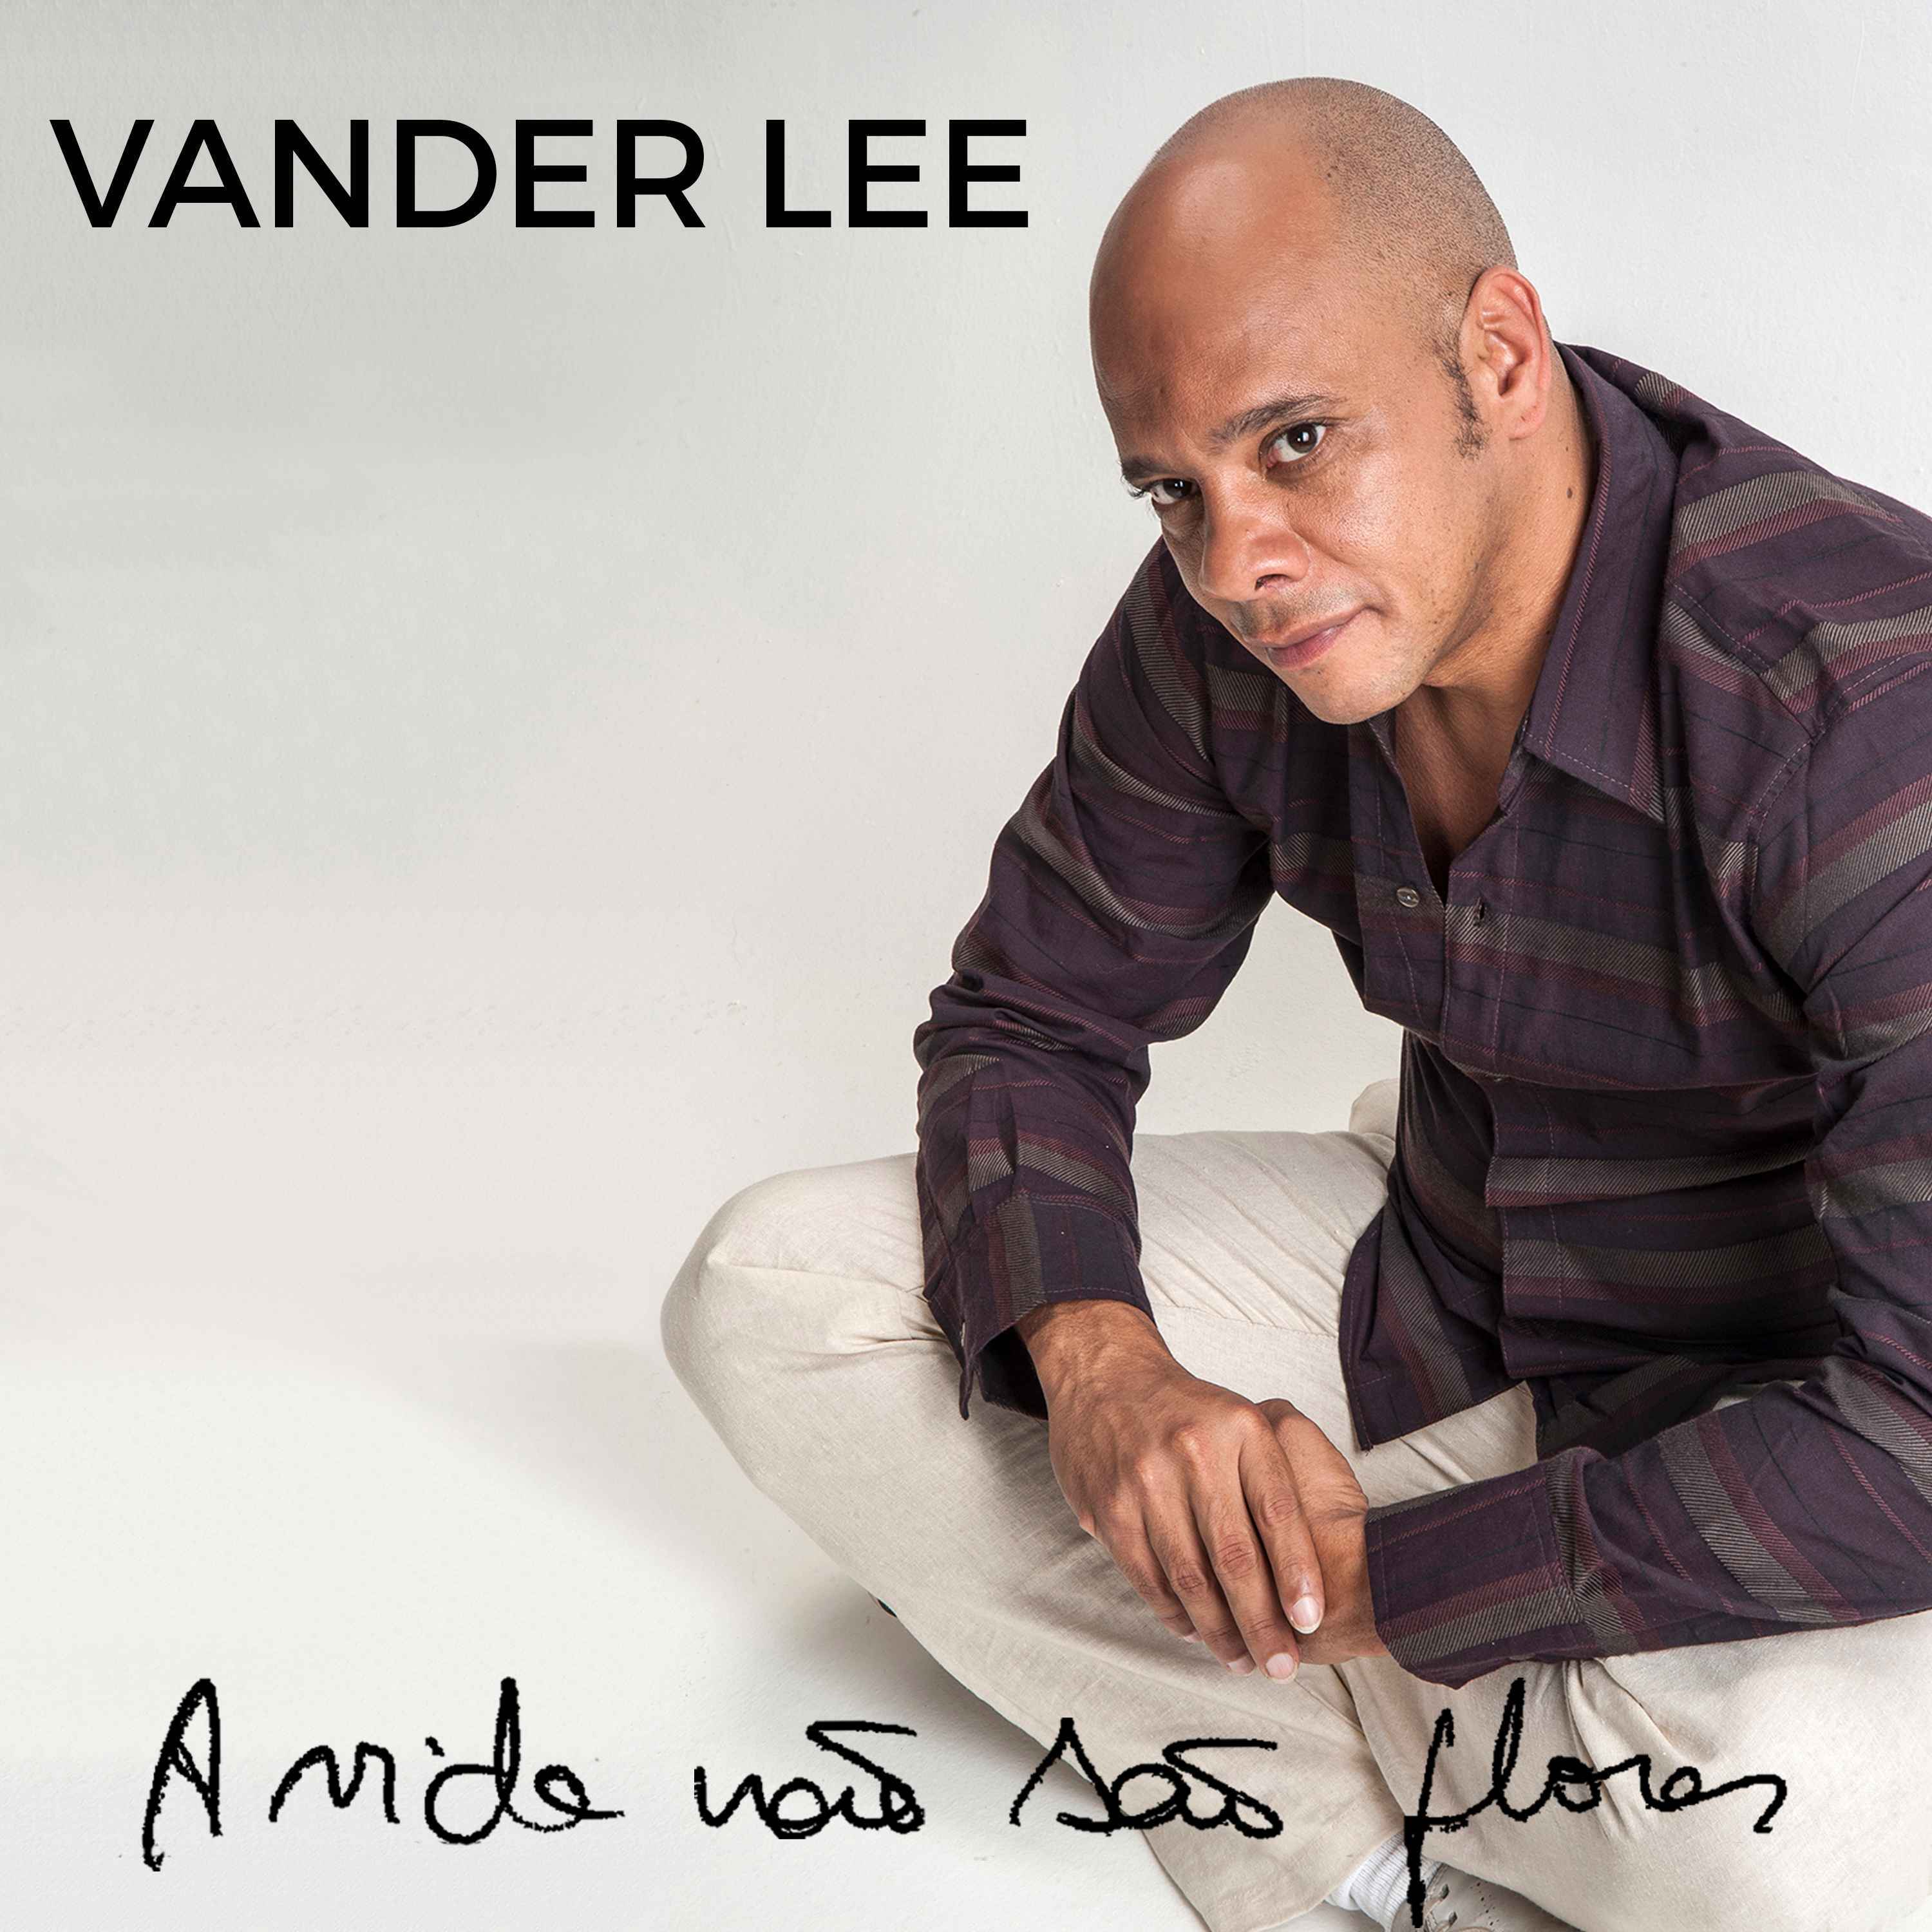 Capa do single 'A Vida não são flores', de Vander Lee